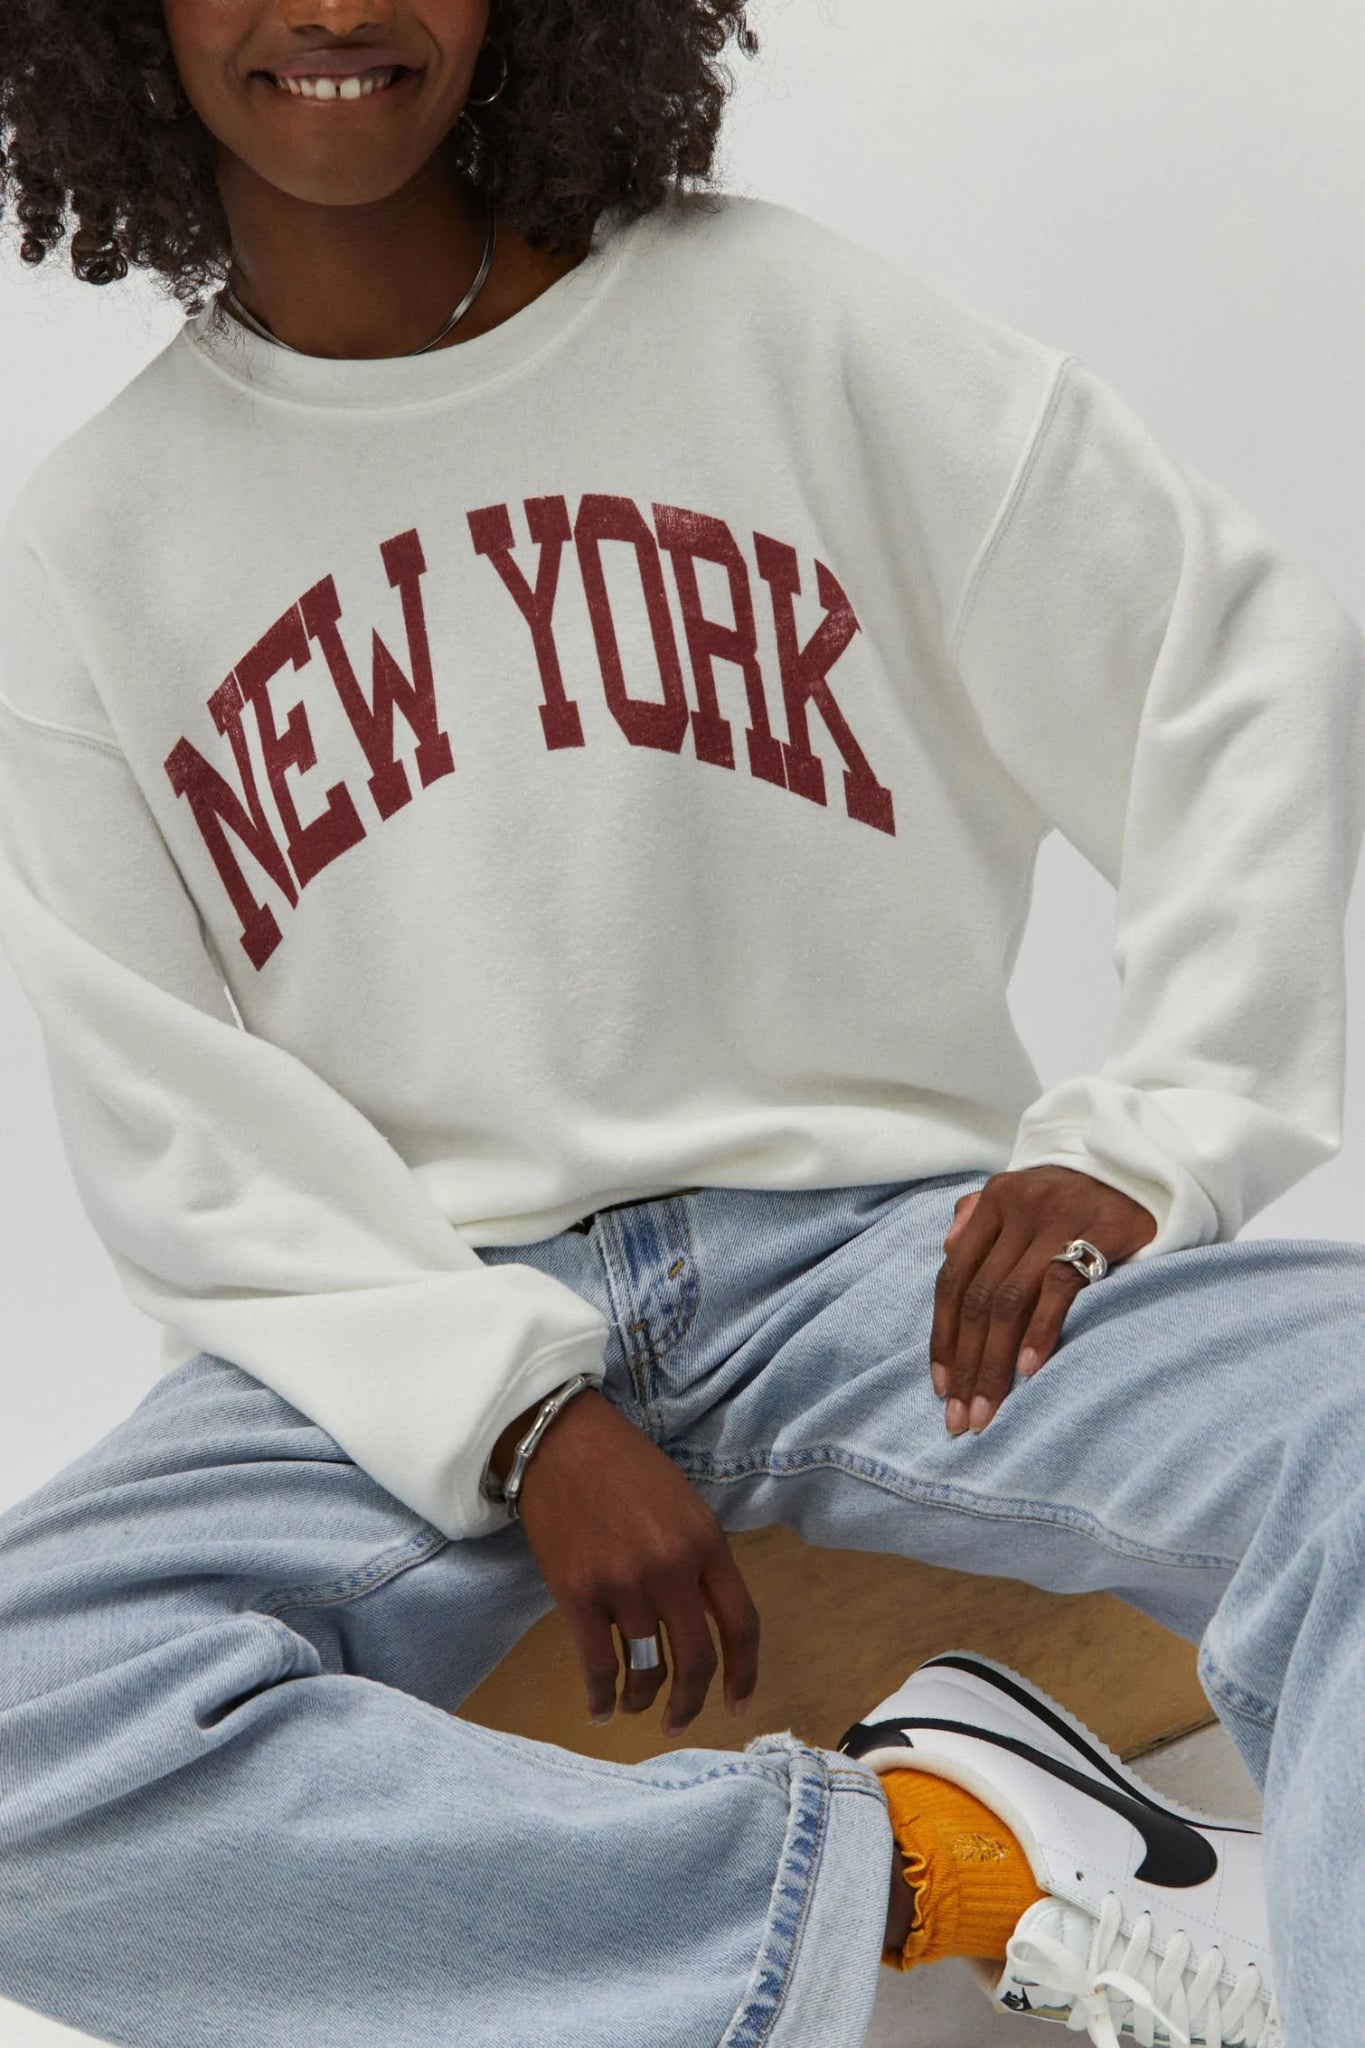 New York Boyfriend Sweatshirt